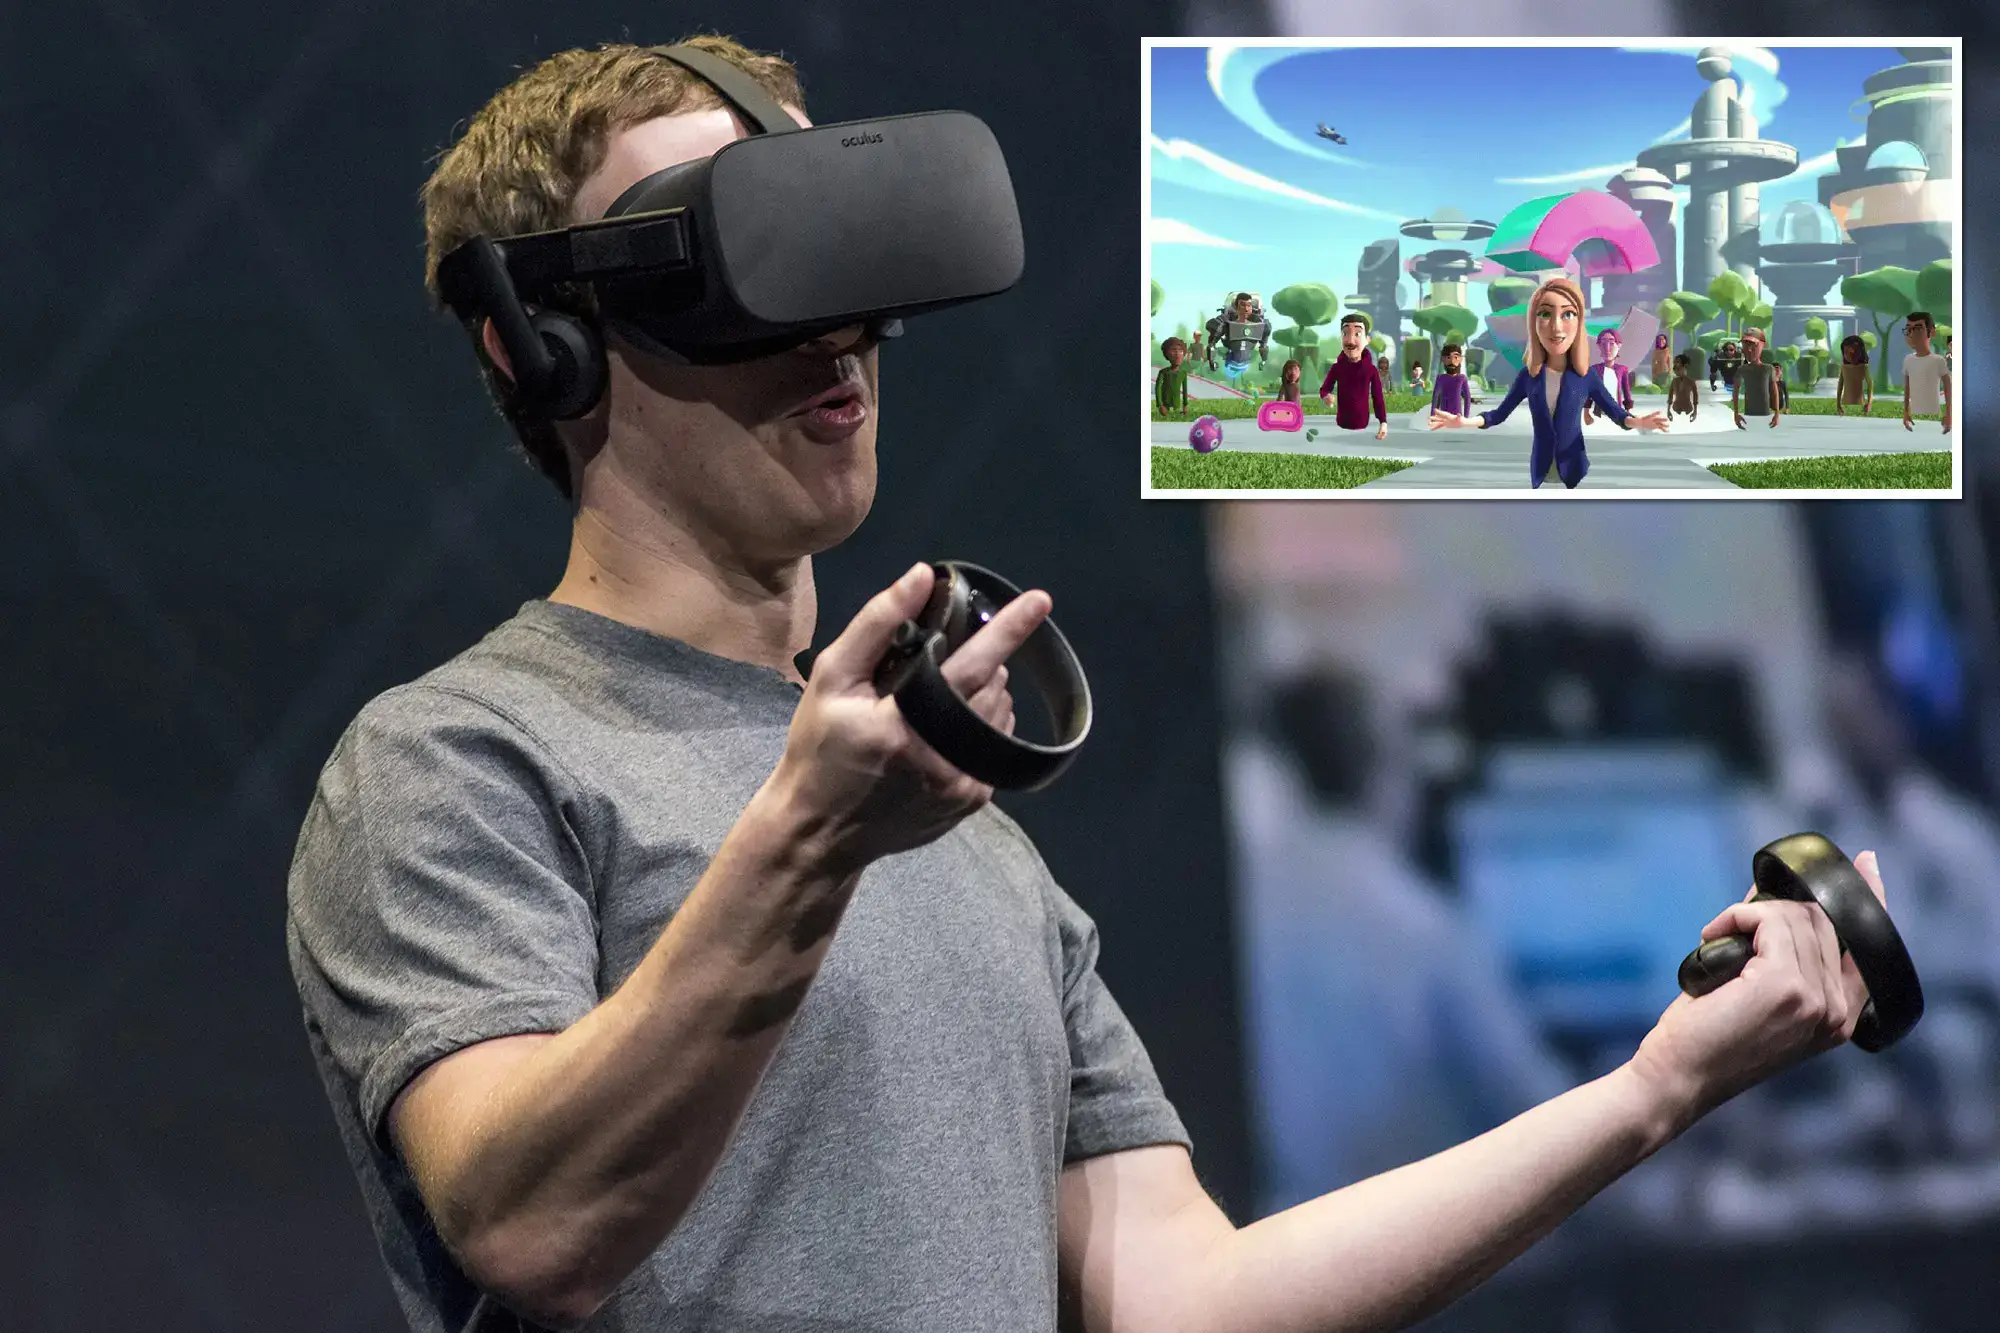 Побочные эффекты использования VR-технологий. Марк Цукерберг в очках виртуальной реальности. Фото.